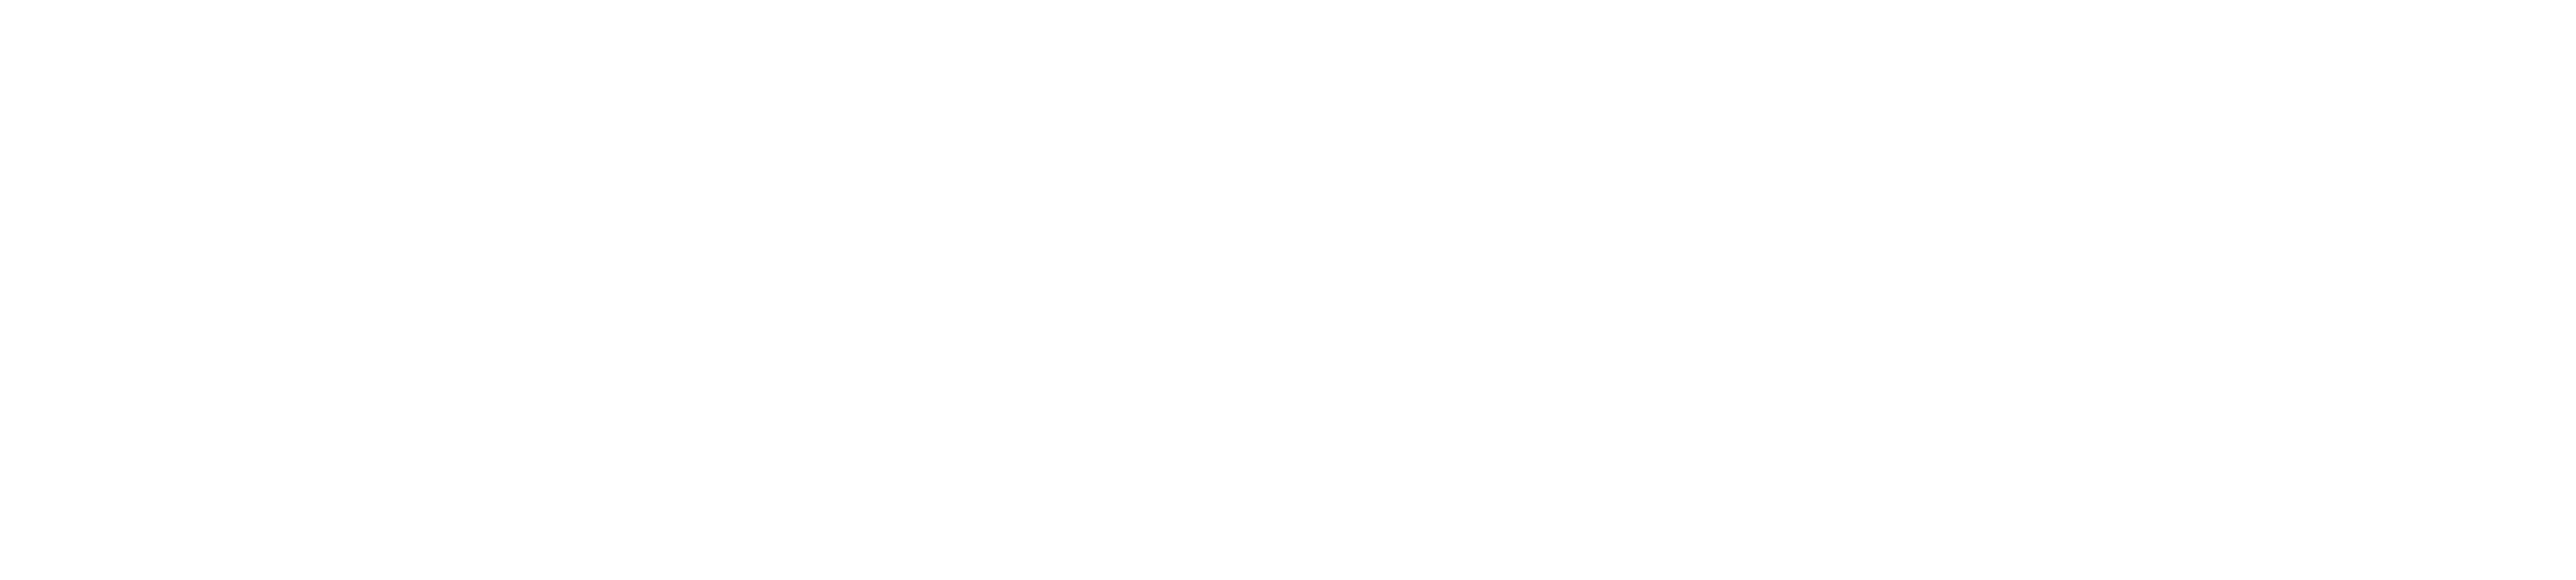 Smart at reception - 無償版 -